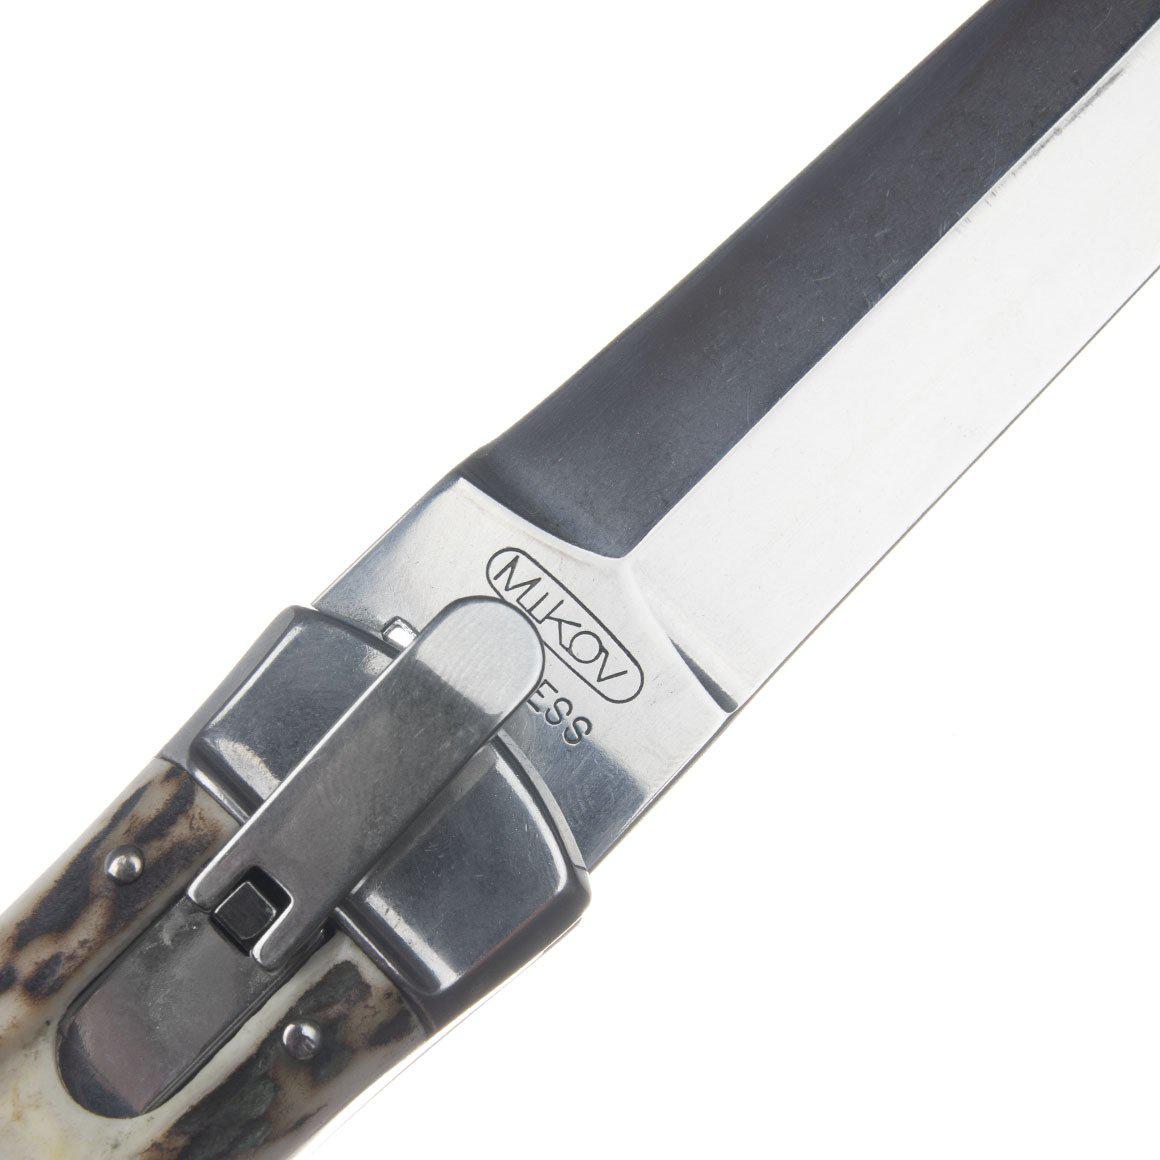 Vyhazovací nůž Predátor parůžek